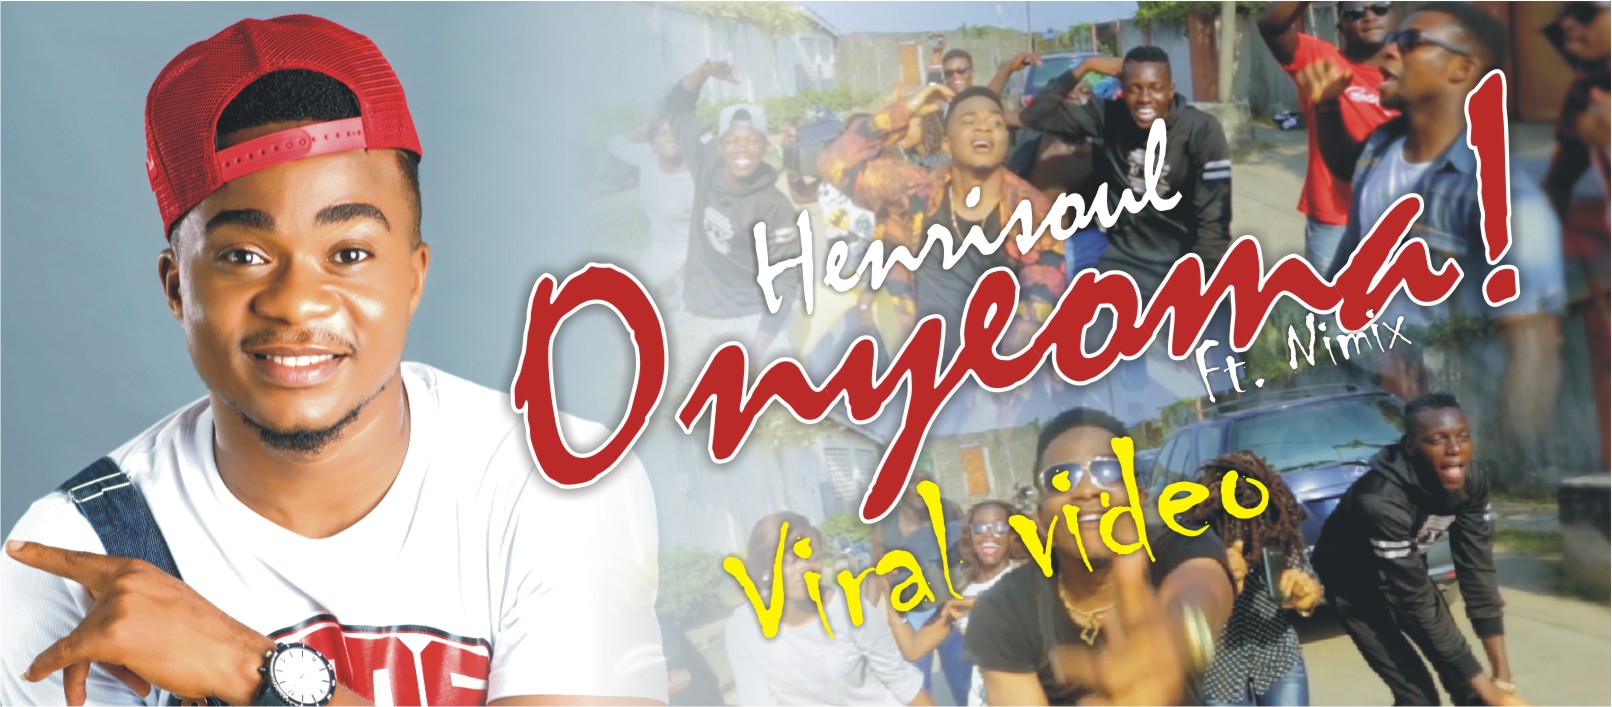 VIDEO: Henrisoul - Onyeoma ft. Nimix